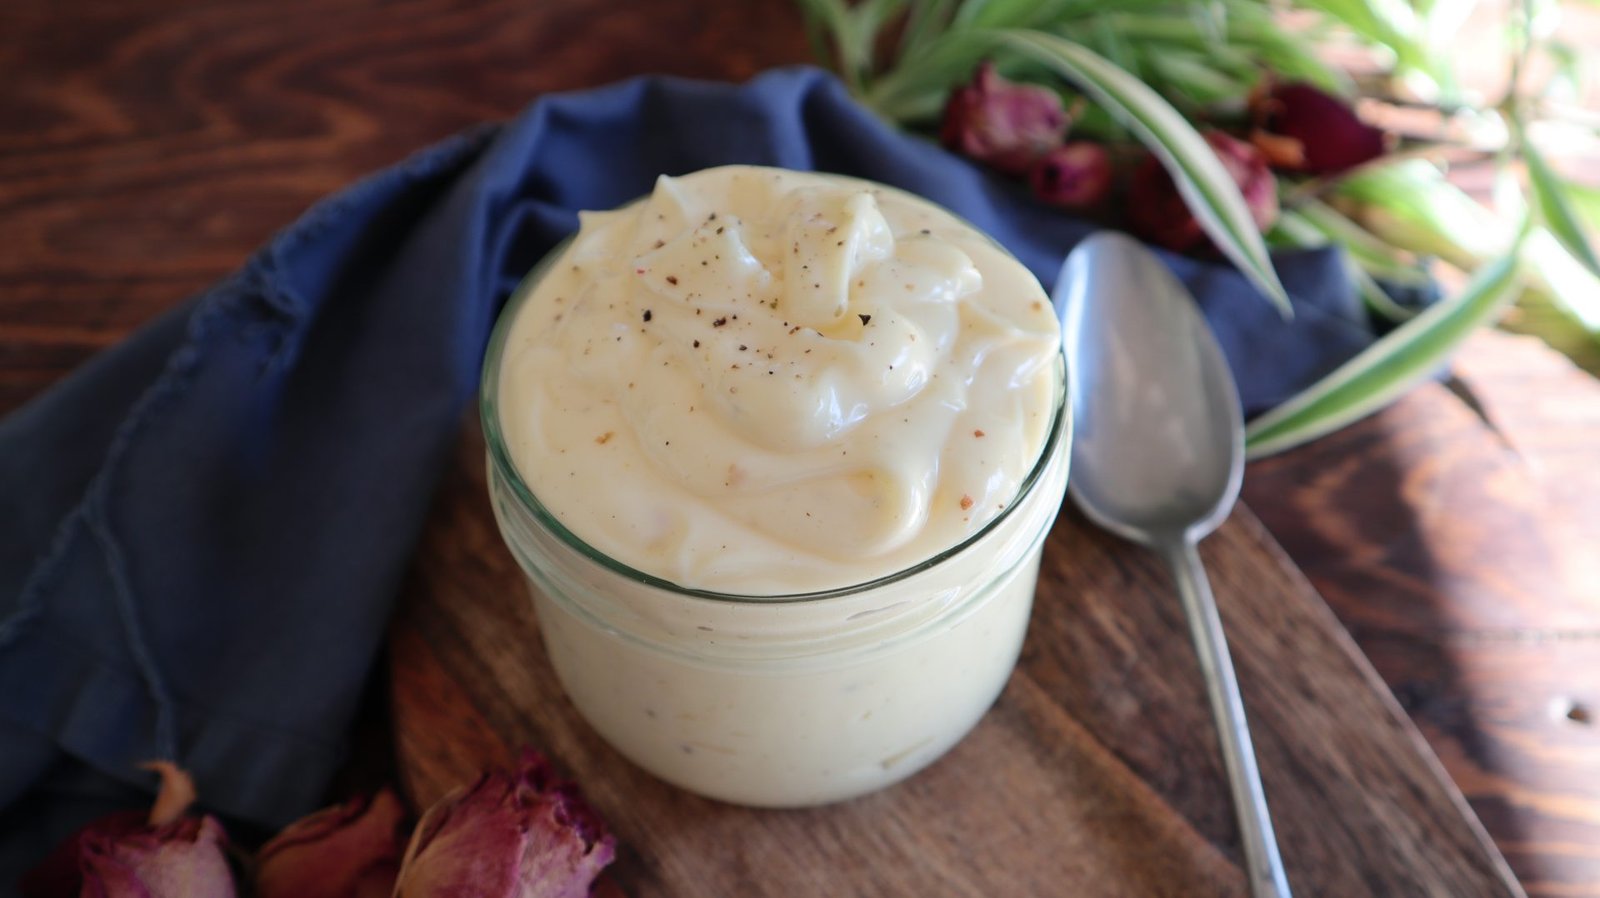 Comment-faire-de-la-mayonnaise-sans-moutarde.jpg (1581×1054)